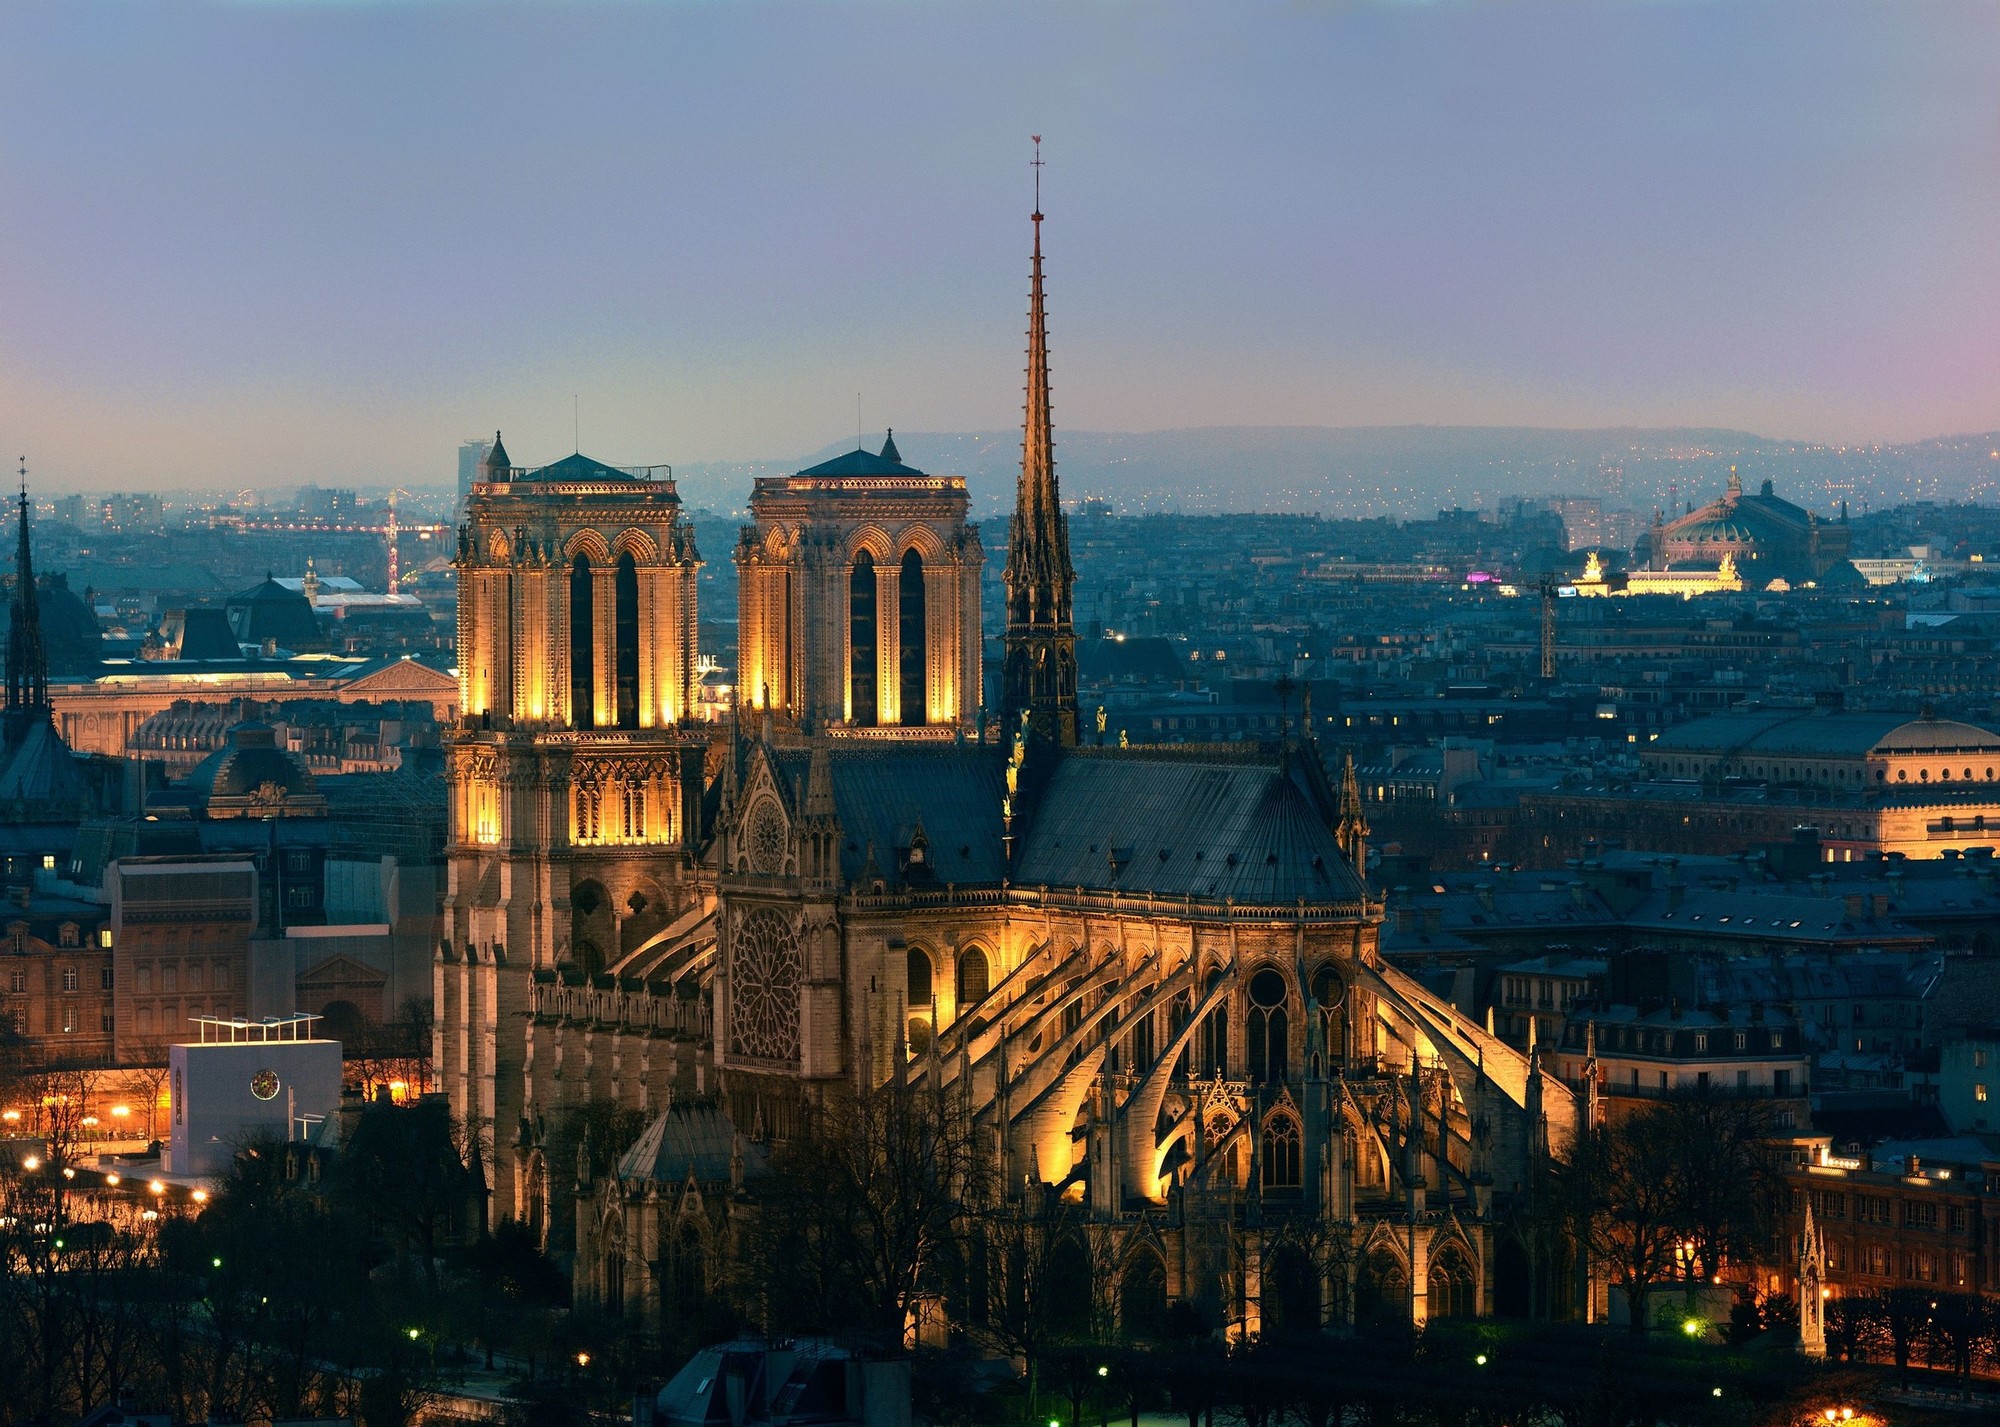 位于巴黎市中心,有着800多年历史的巴黎圣母院发生大火,整座建筑损毁